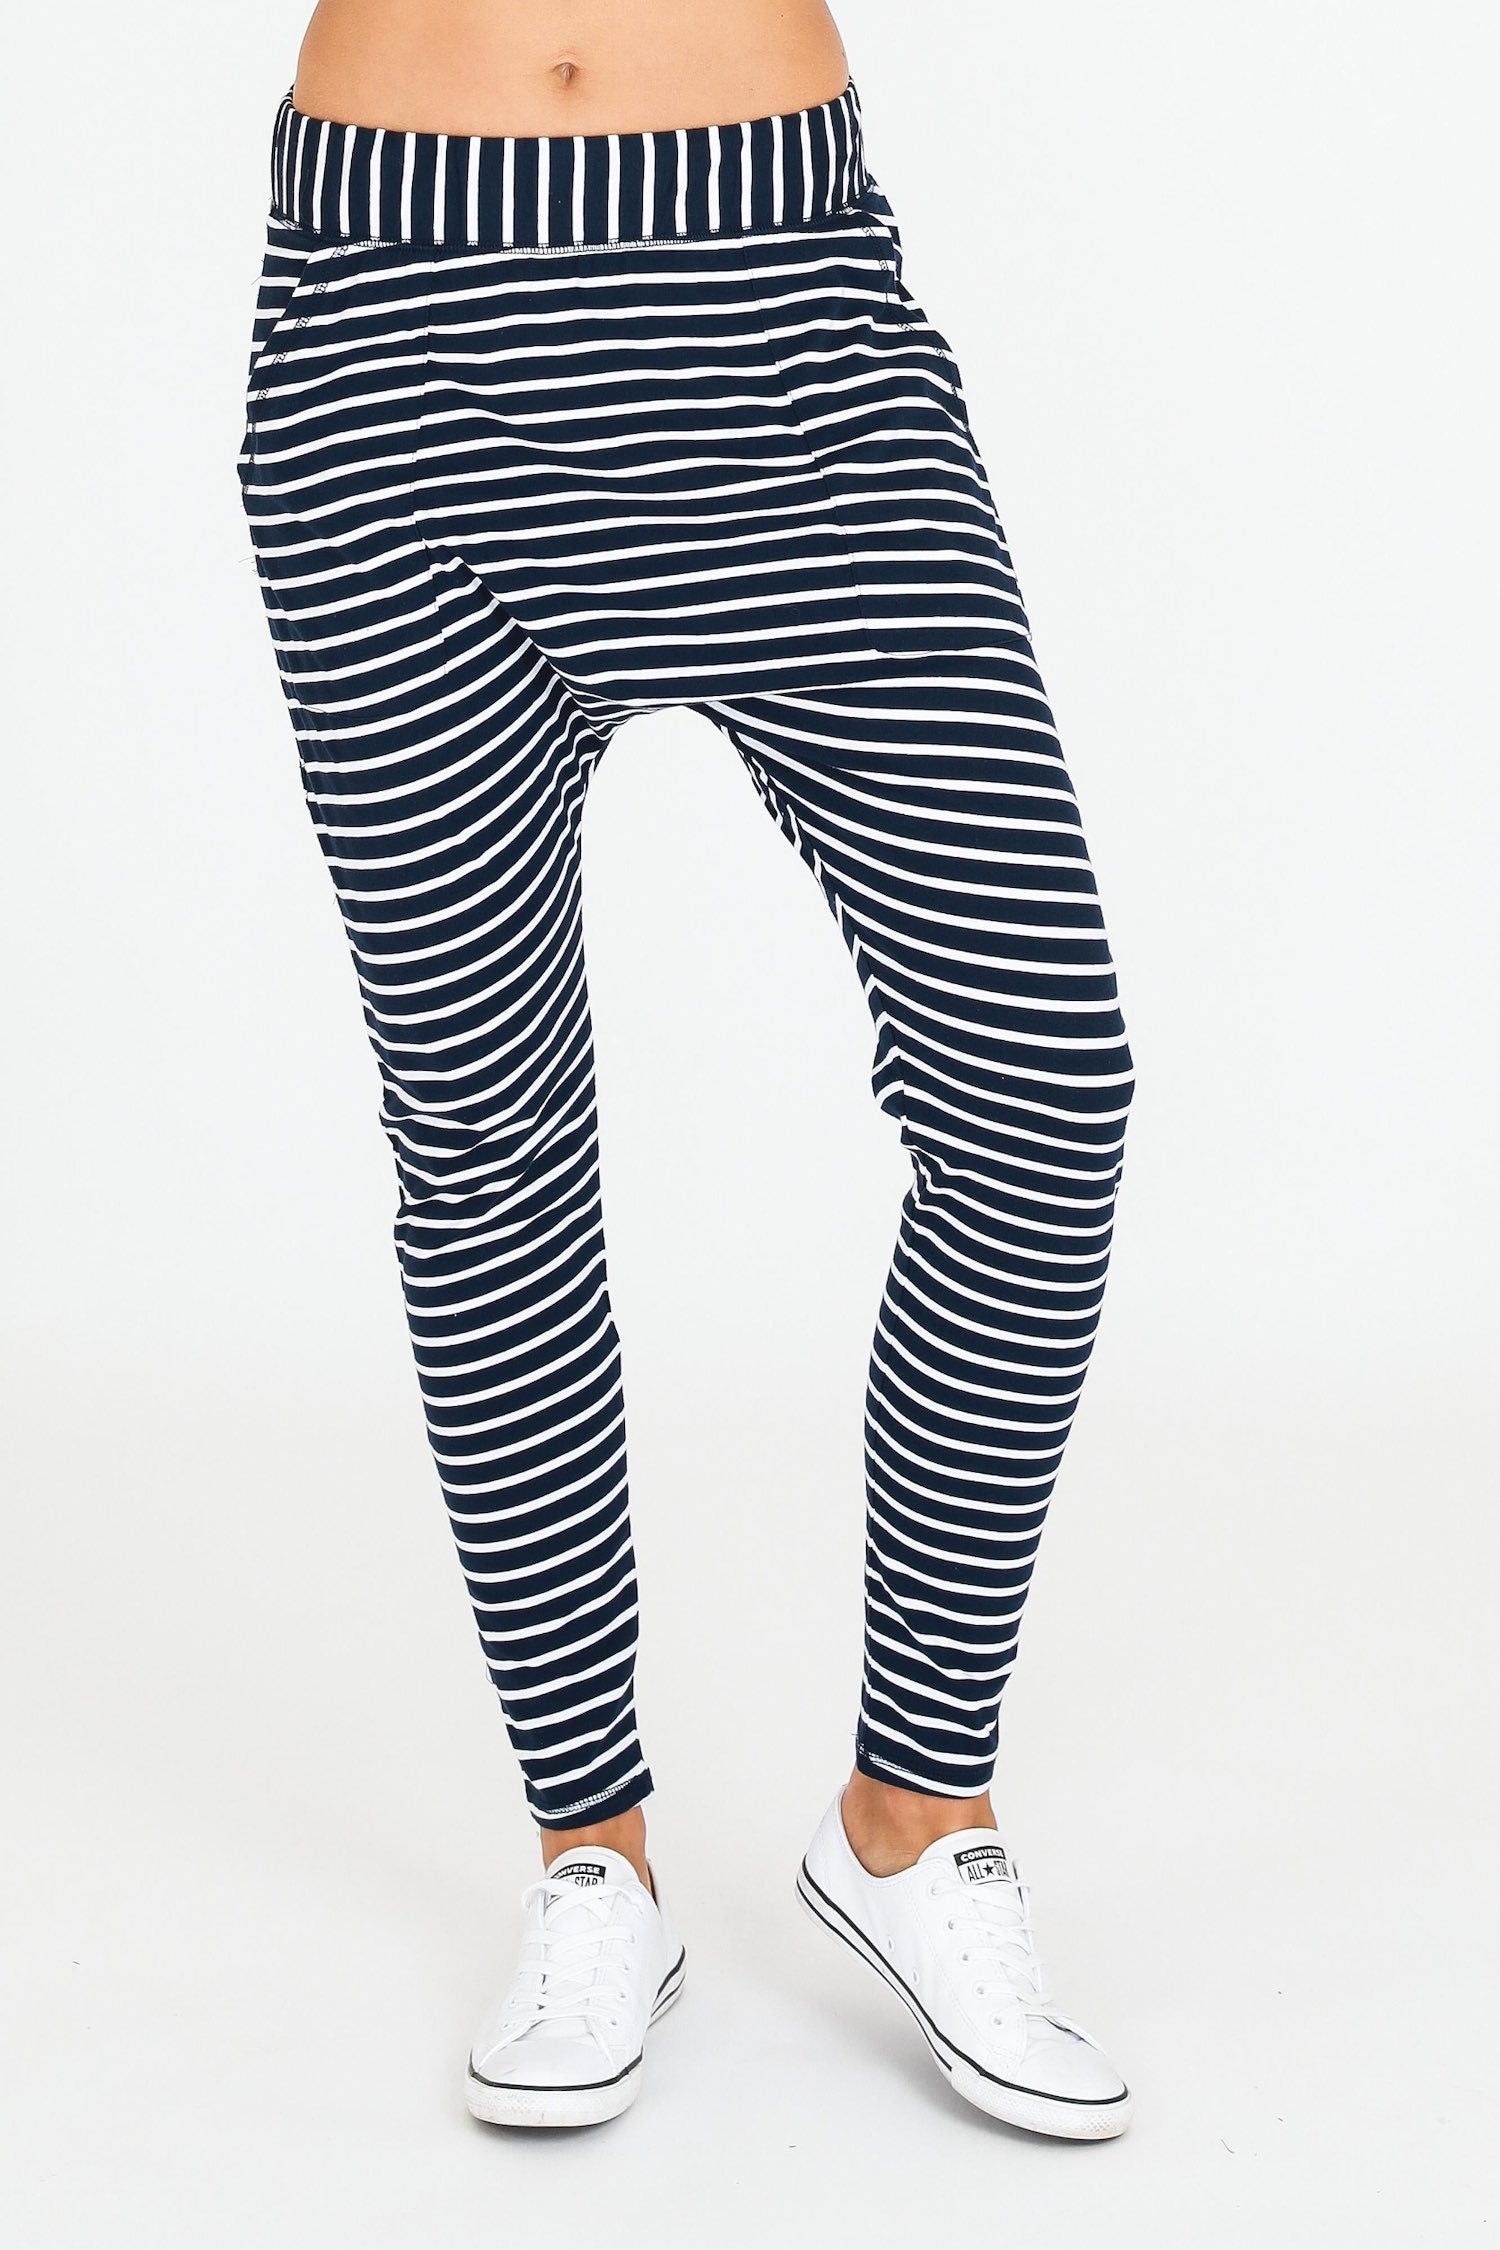 drop crotch pants women #color_black stripe